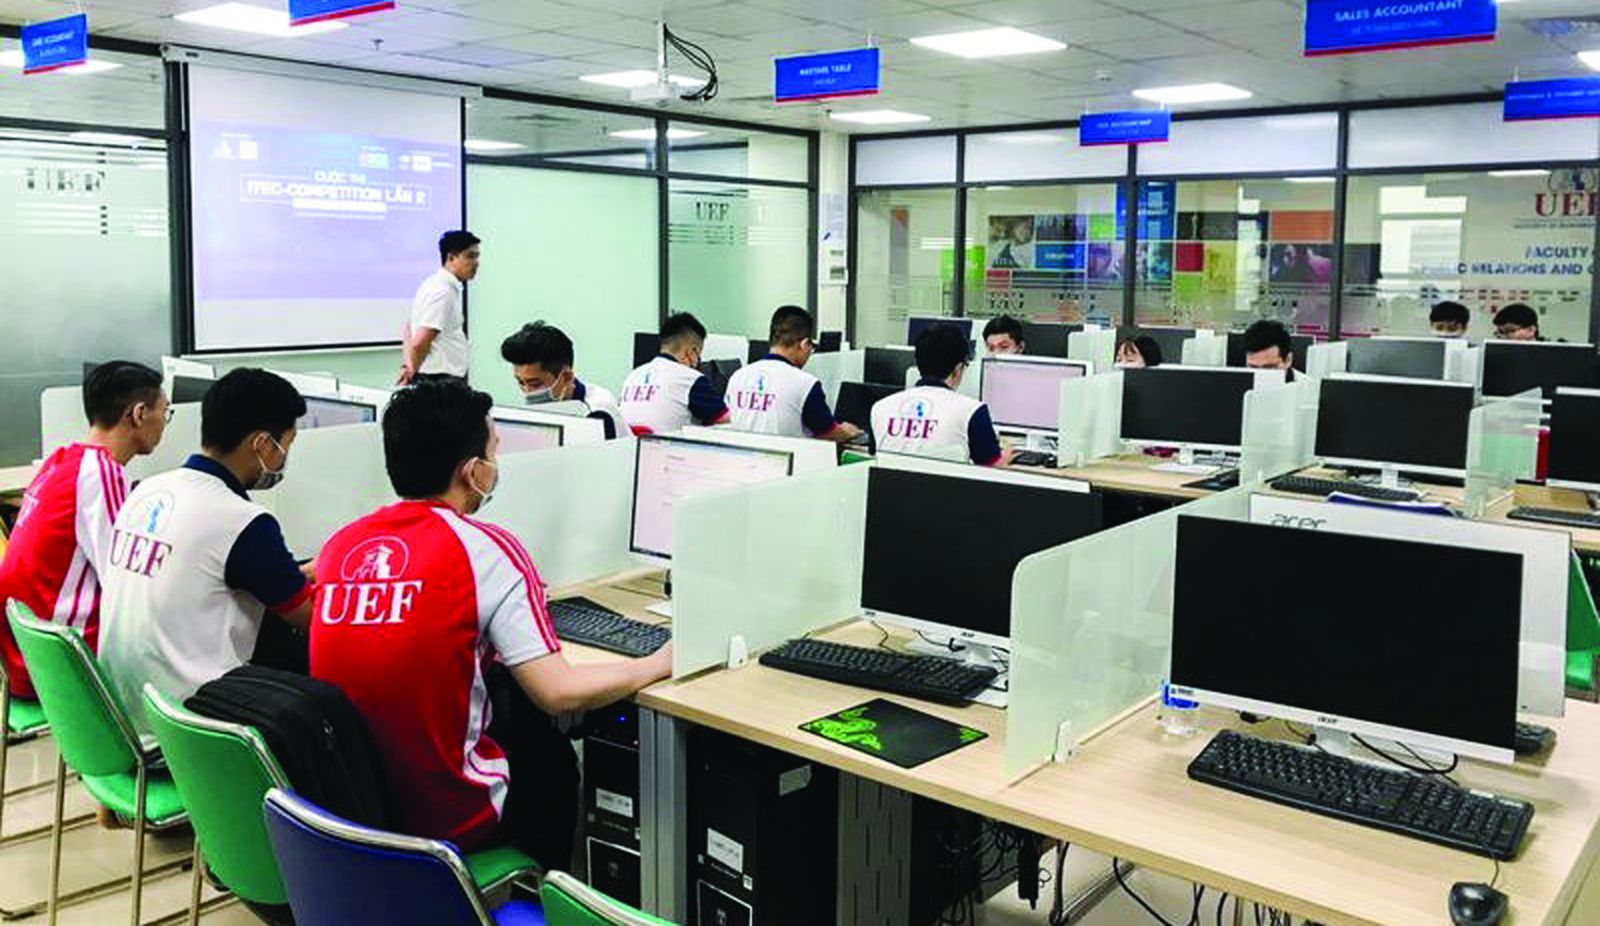  Đào tạo nhận lực công nghệ thông tin tại Đại học Kinh tế - Tài chính Thành phố Hồ Chí Minh - UEF